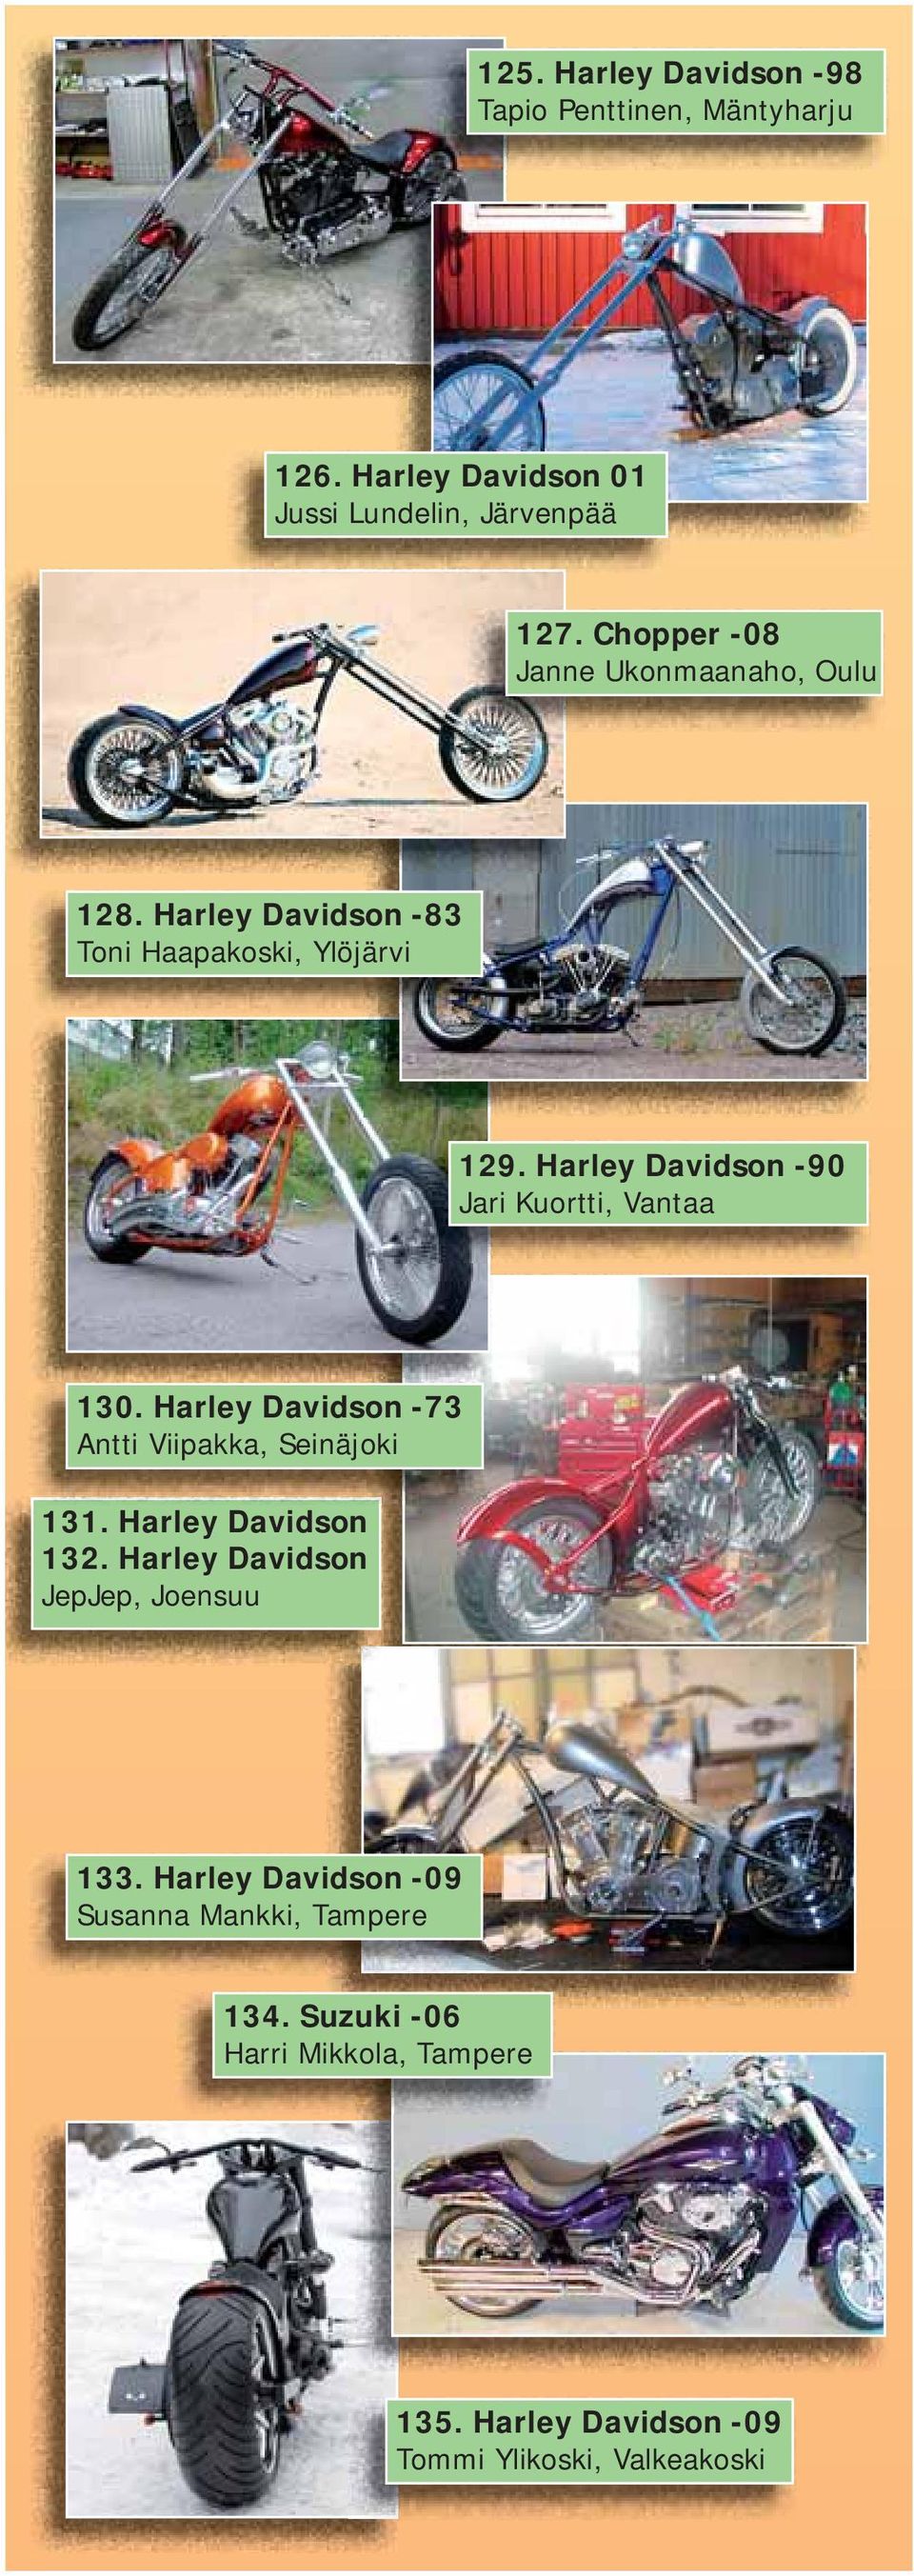 Harley Davidson -90 Jari Kuortti, Vantaa 130. Harley Davidson -73 Antti Viipakka, Seinäjoki 131. Harley Davidson 132.